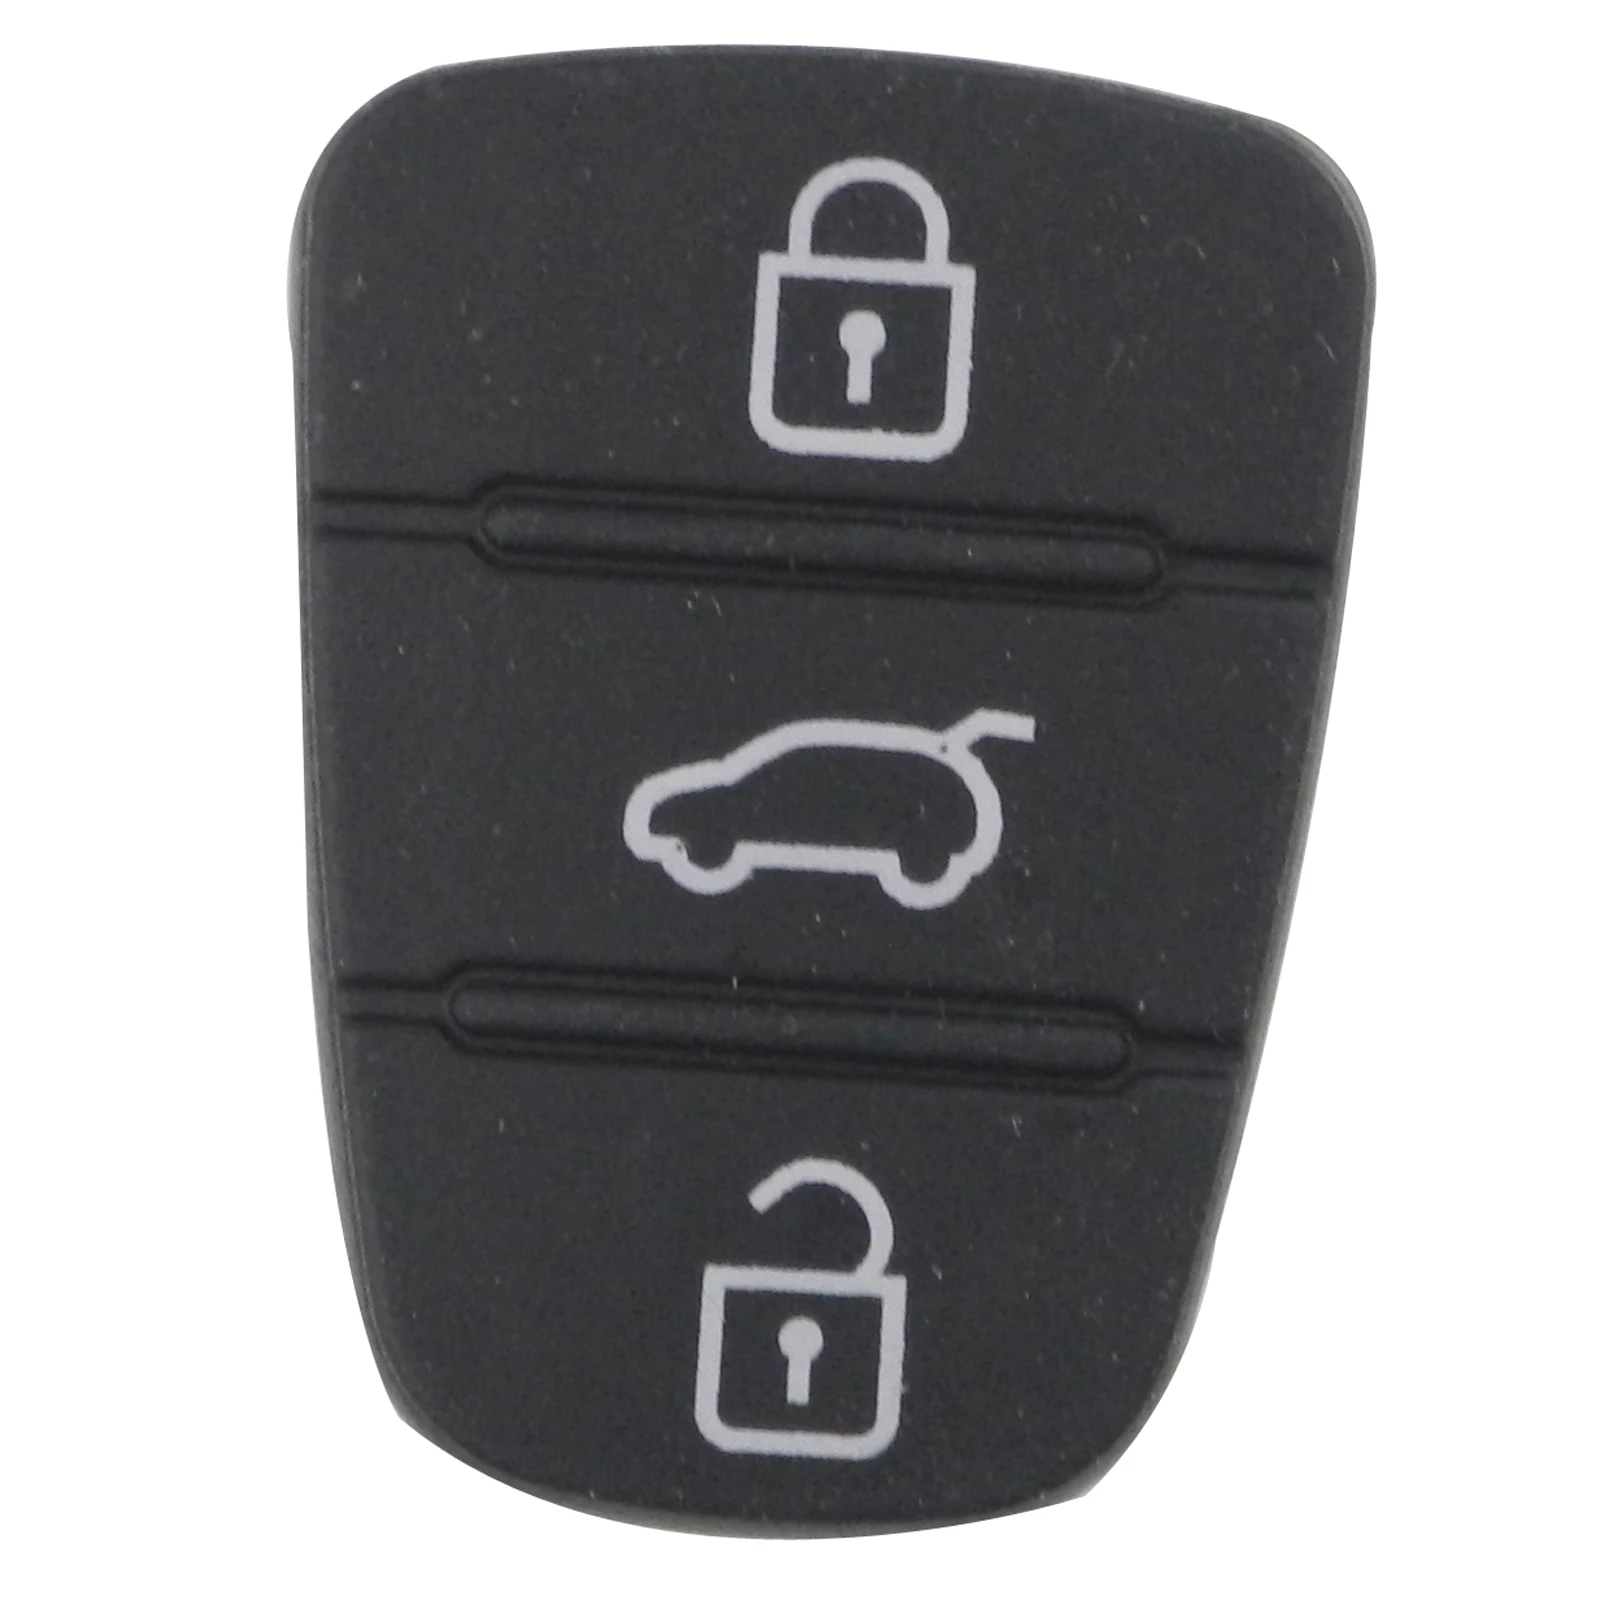 Jingyuqin 3 кнопки Новая замена резиновая накладка Флип складной корпус автомобильного ключа дистанционного управления для hyundai I30 IX35 Kia K2 K5 чехол для ключей